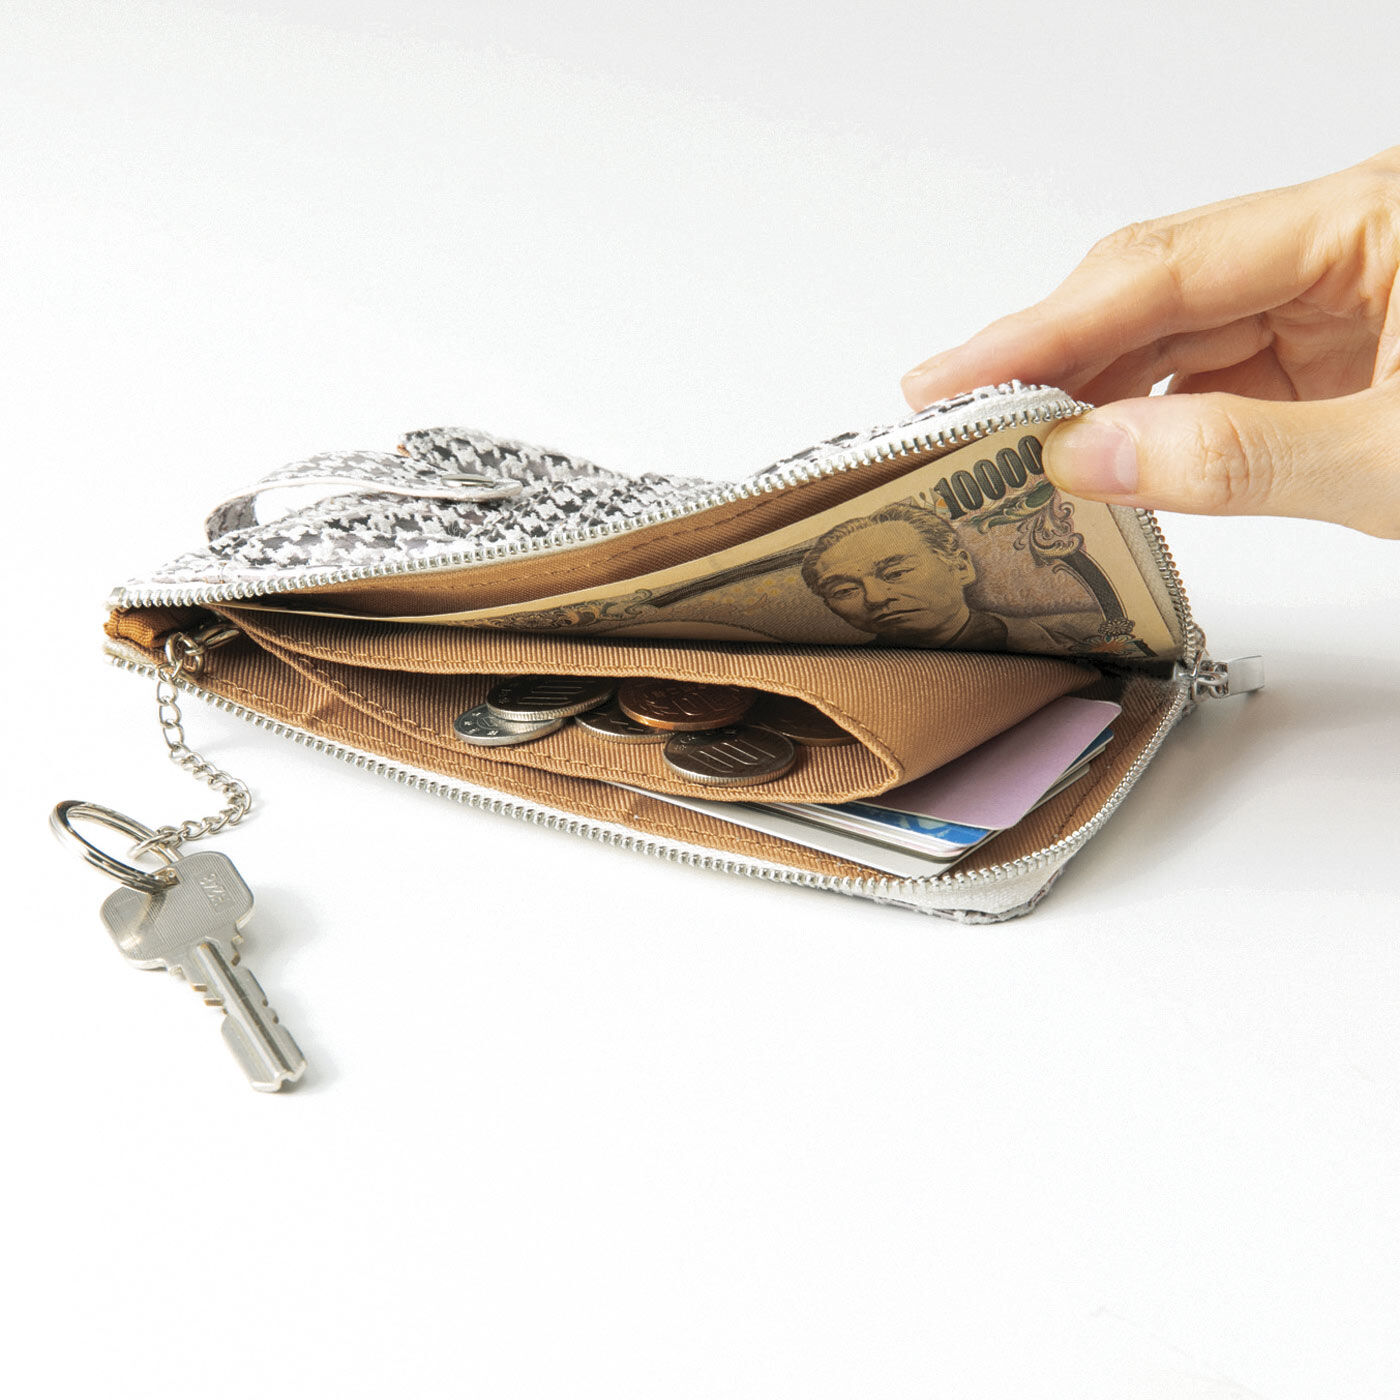 フェリシモの雑貨Kraso|UP.de　きらめく本革でハッピーを呼ぶ スマホもカードもサッとおさまるコンパクト財布の会|内側にはコイン仕分けポケットと取り外し可能なキーチェーン付き。